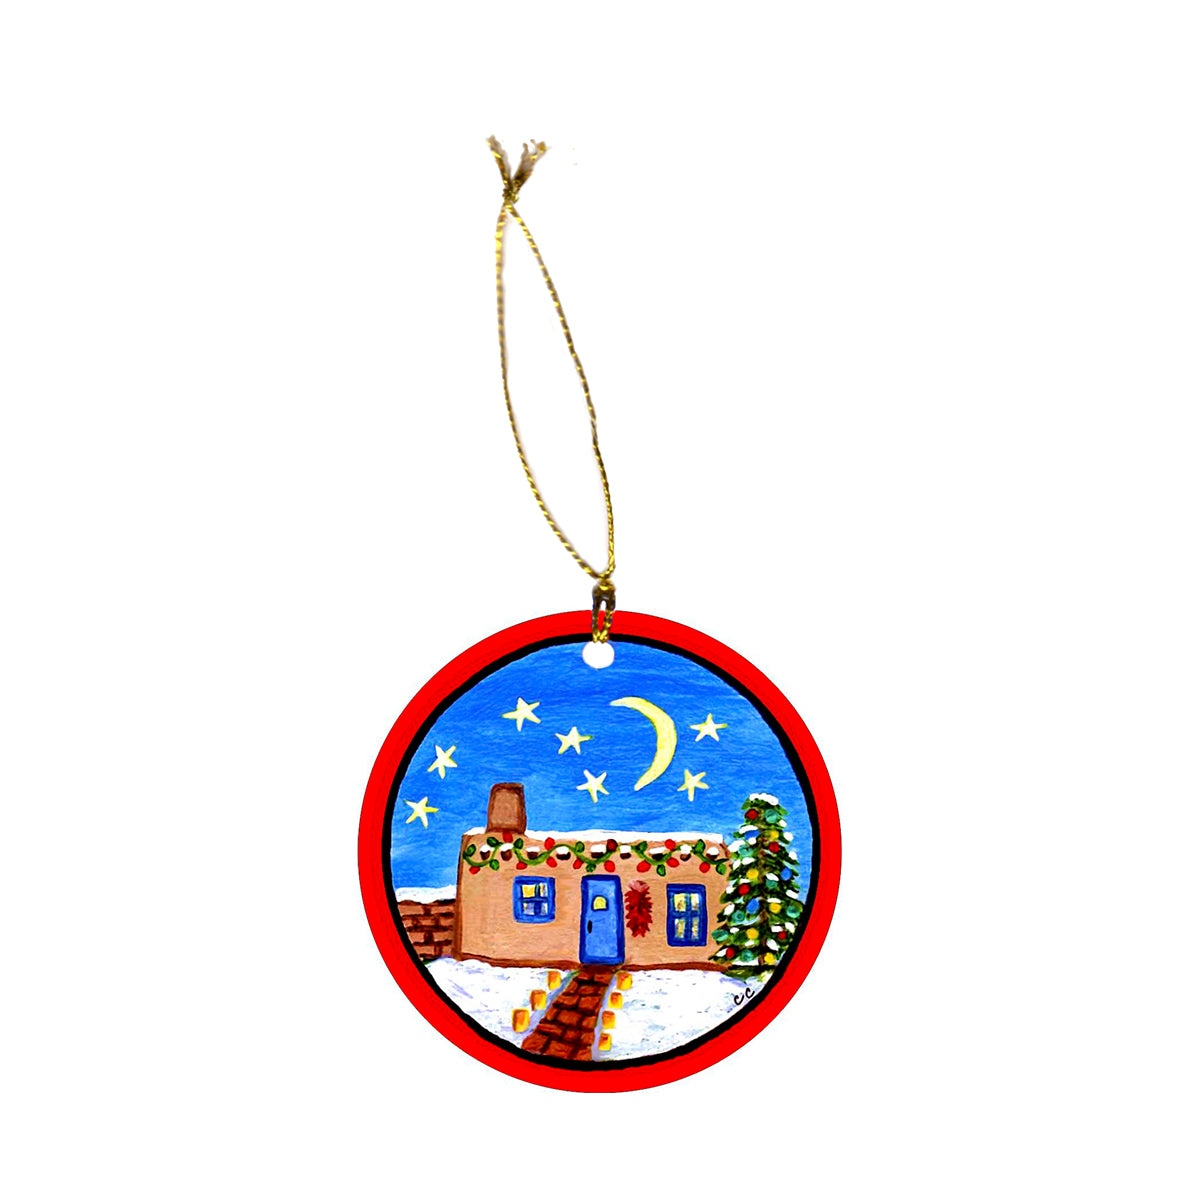 Moonlit Adobe Santa Fe Ornament